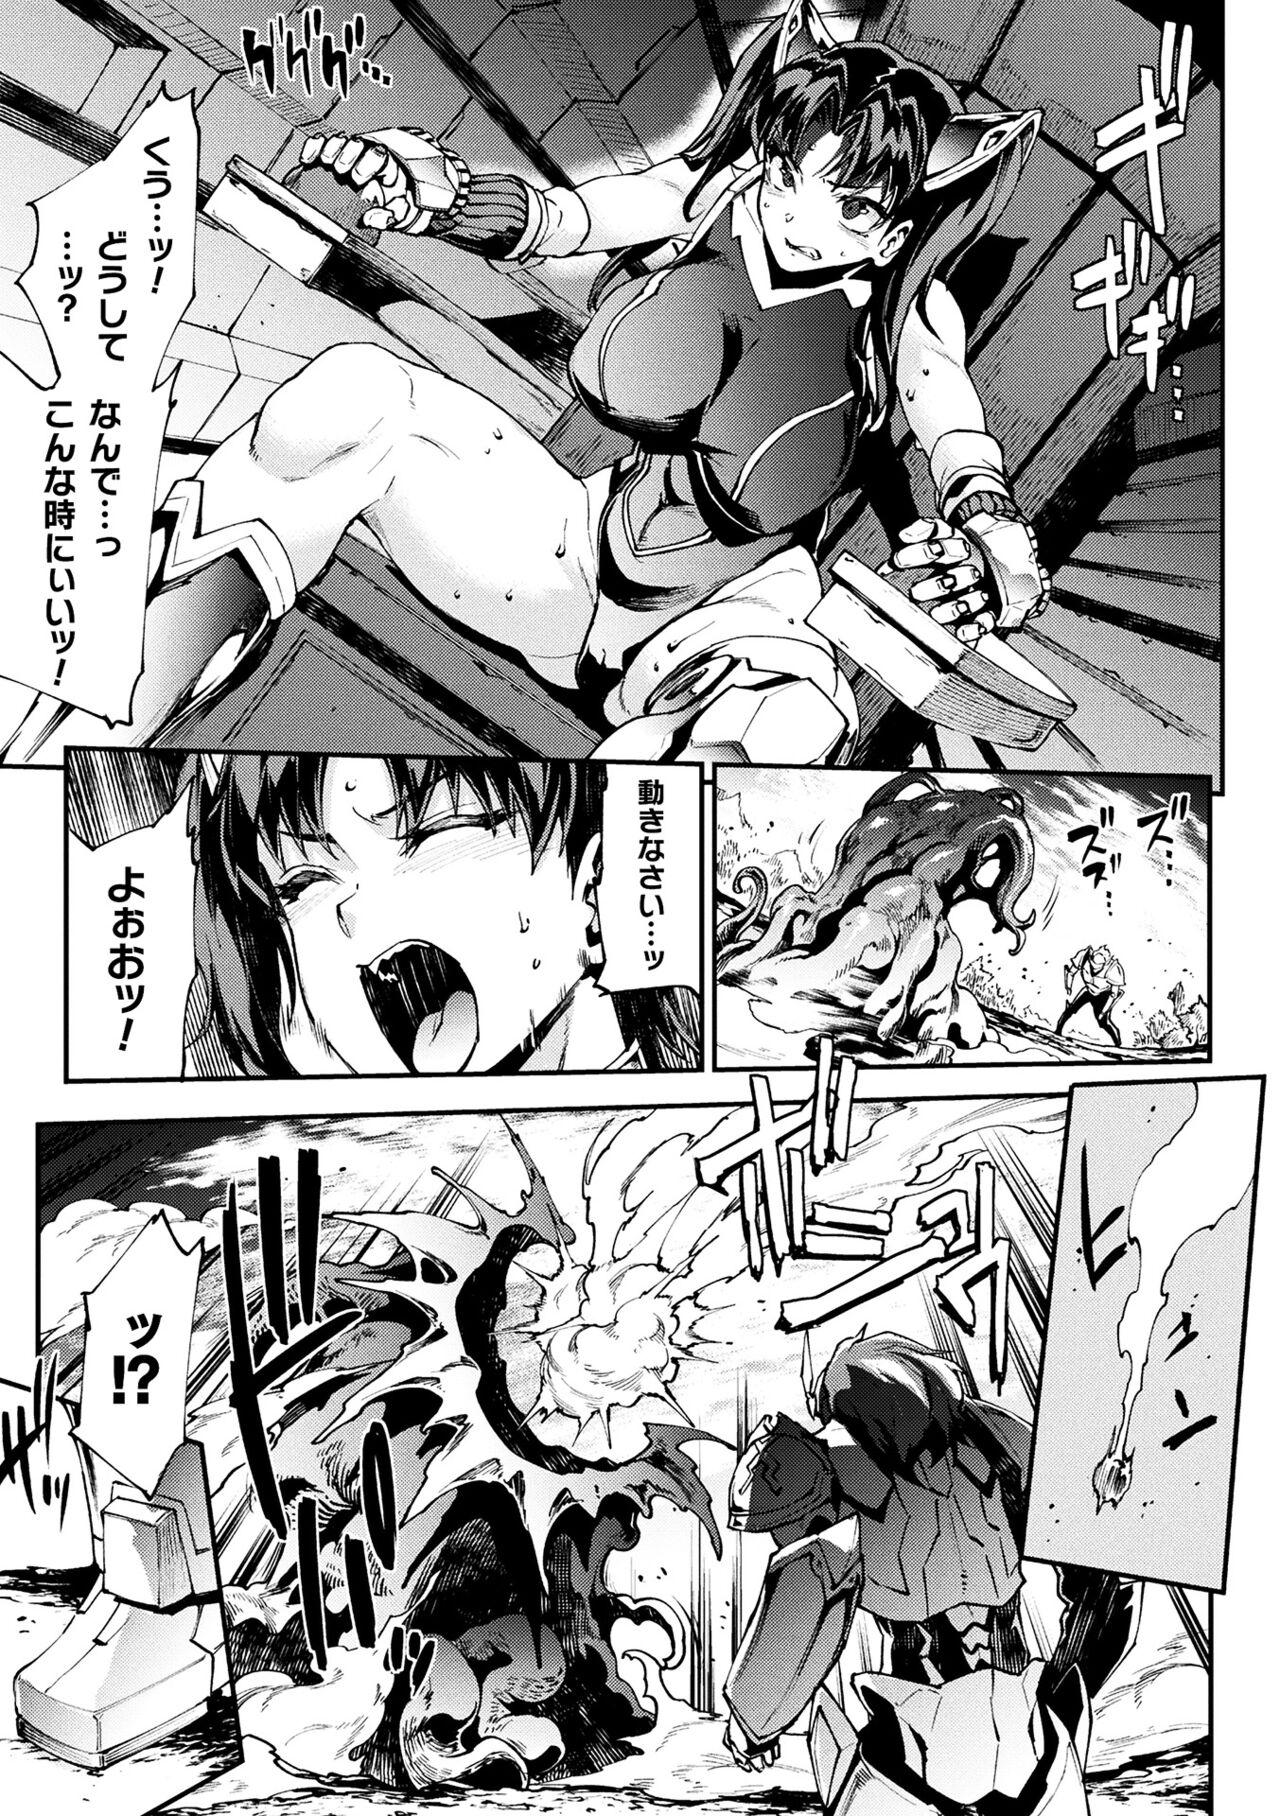 [Erect Sawaru] Raikou Shinki Igis Magia III -PANDRA saga 3rd ignition- 4 [Digital] 150